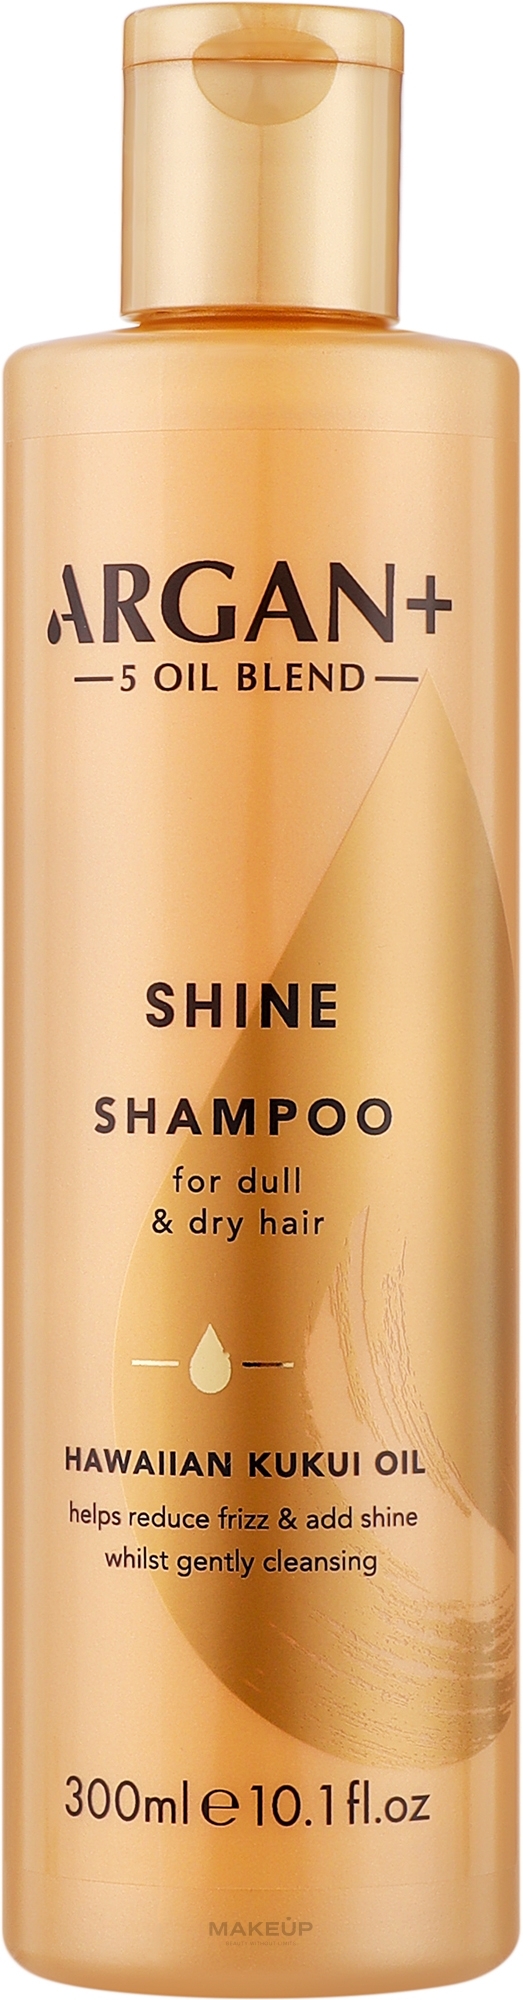 Шампунь для блеска сухих и тусклых волос - Argan+ Shine Shampoo Hawaiian Kukui Oil — фото 300ml